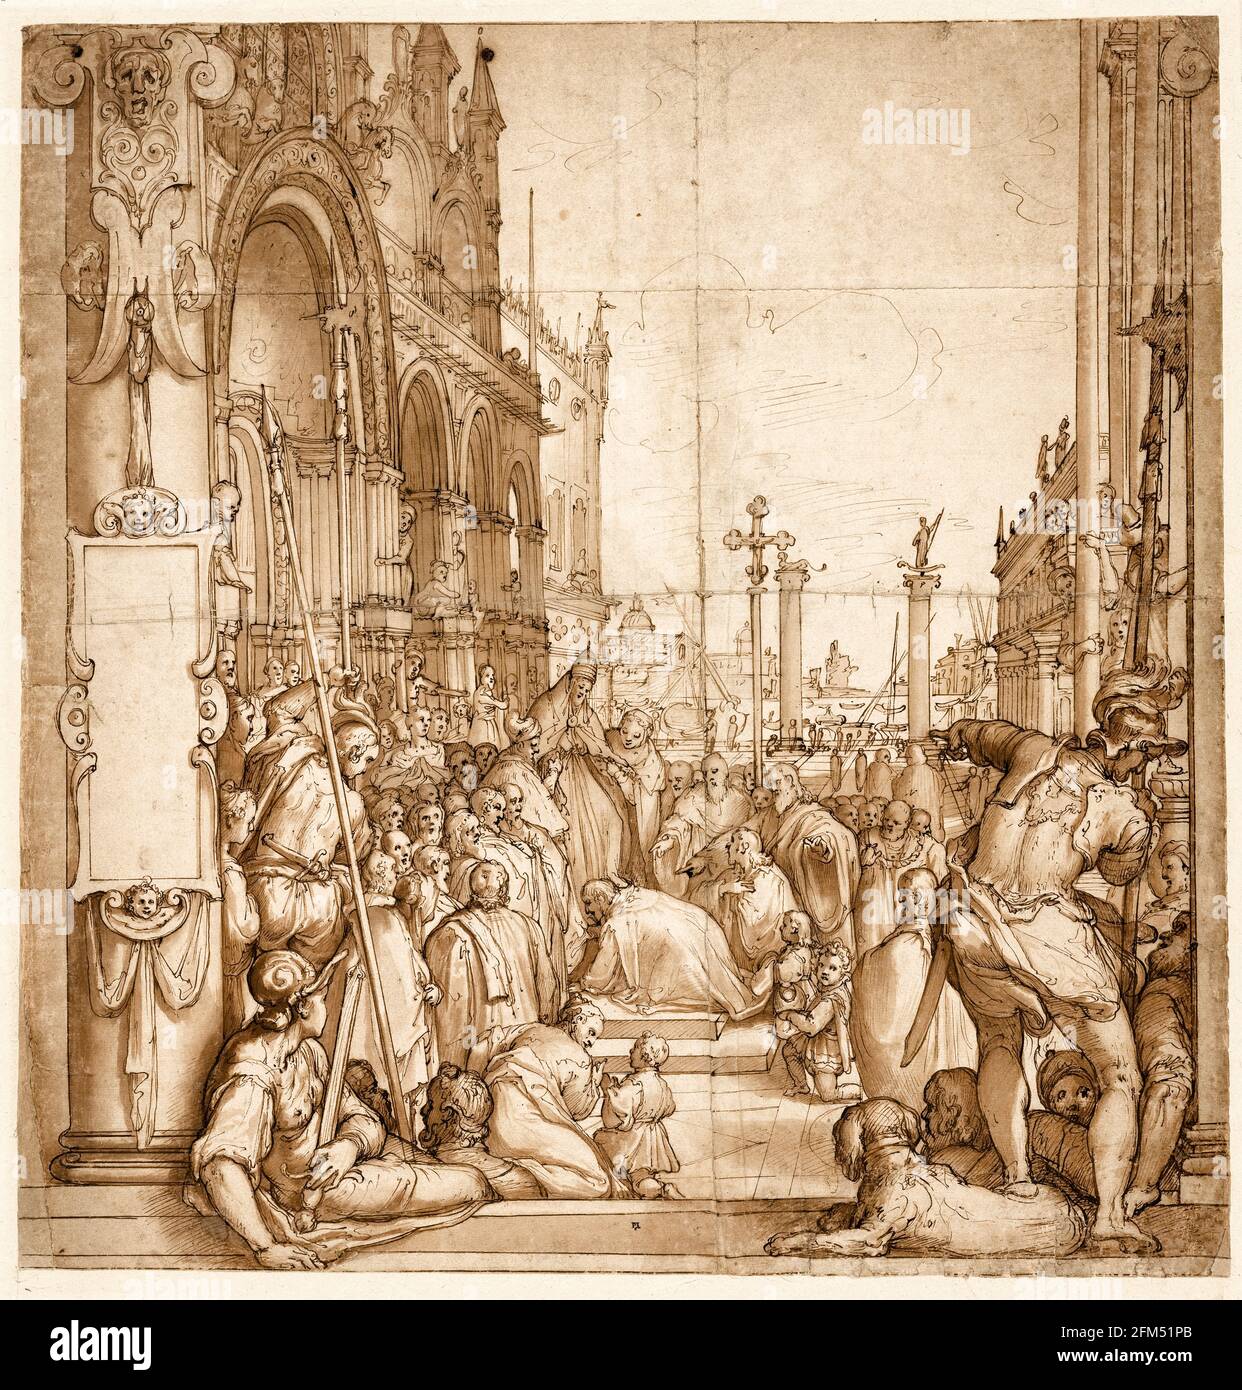 La sottomissione dell'imperatore Federico i (Barbarossa), a papa Alessandro III, disegno di Federico Zuccaro, intorno al 1585 Foto Stock